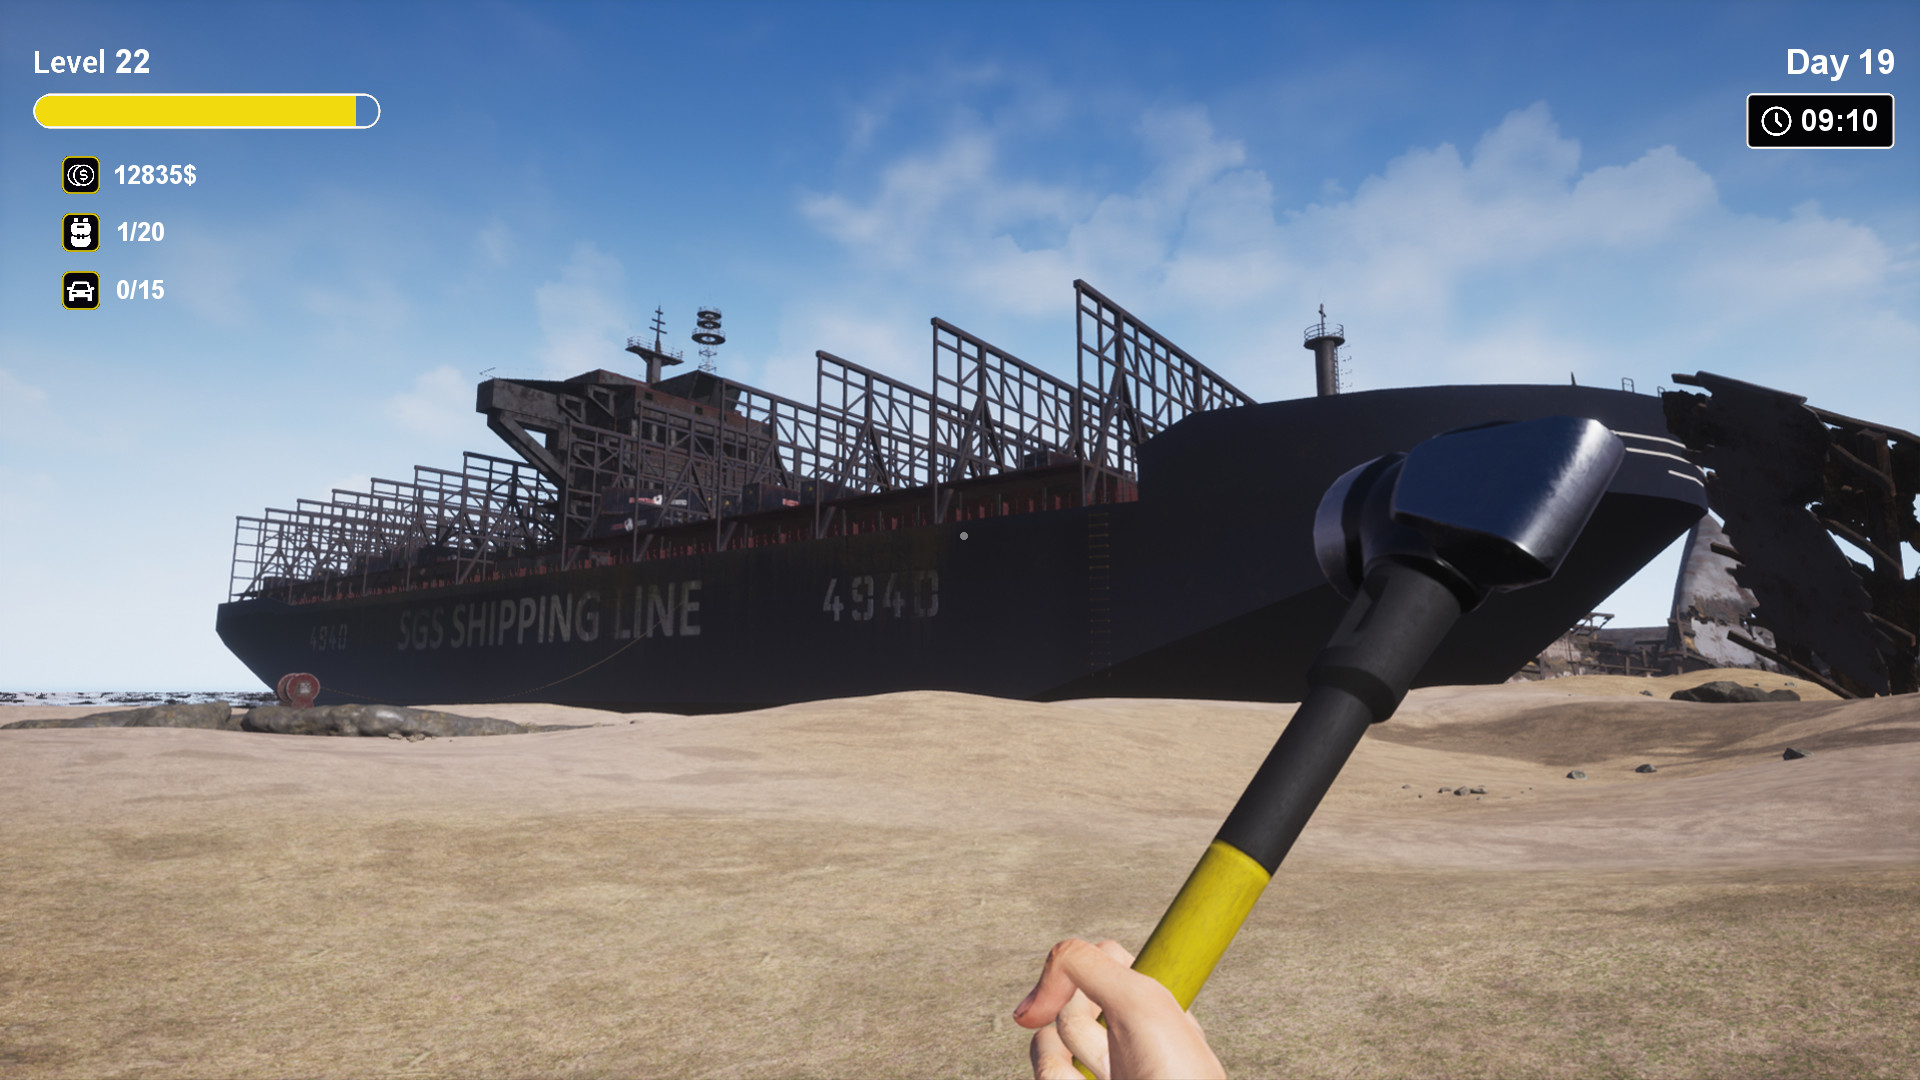 拆船模拟器/船舶墓地模拟器/Ship Graveyard Simulator v1.0.5